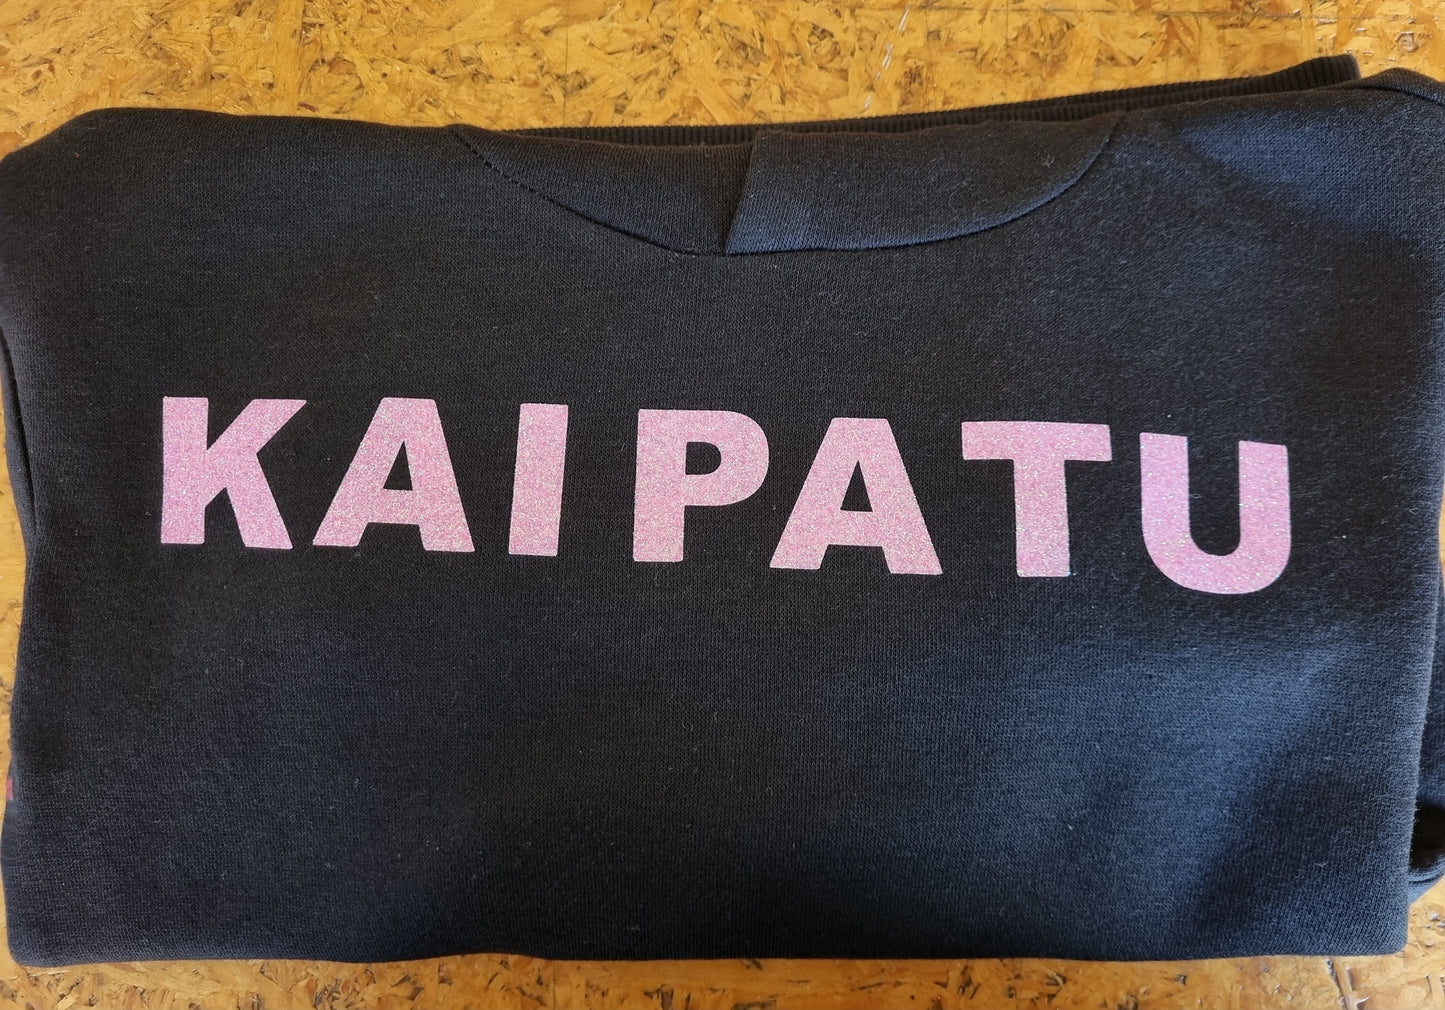 Kaipatu limited edition hoodies